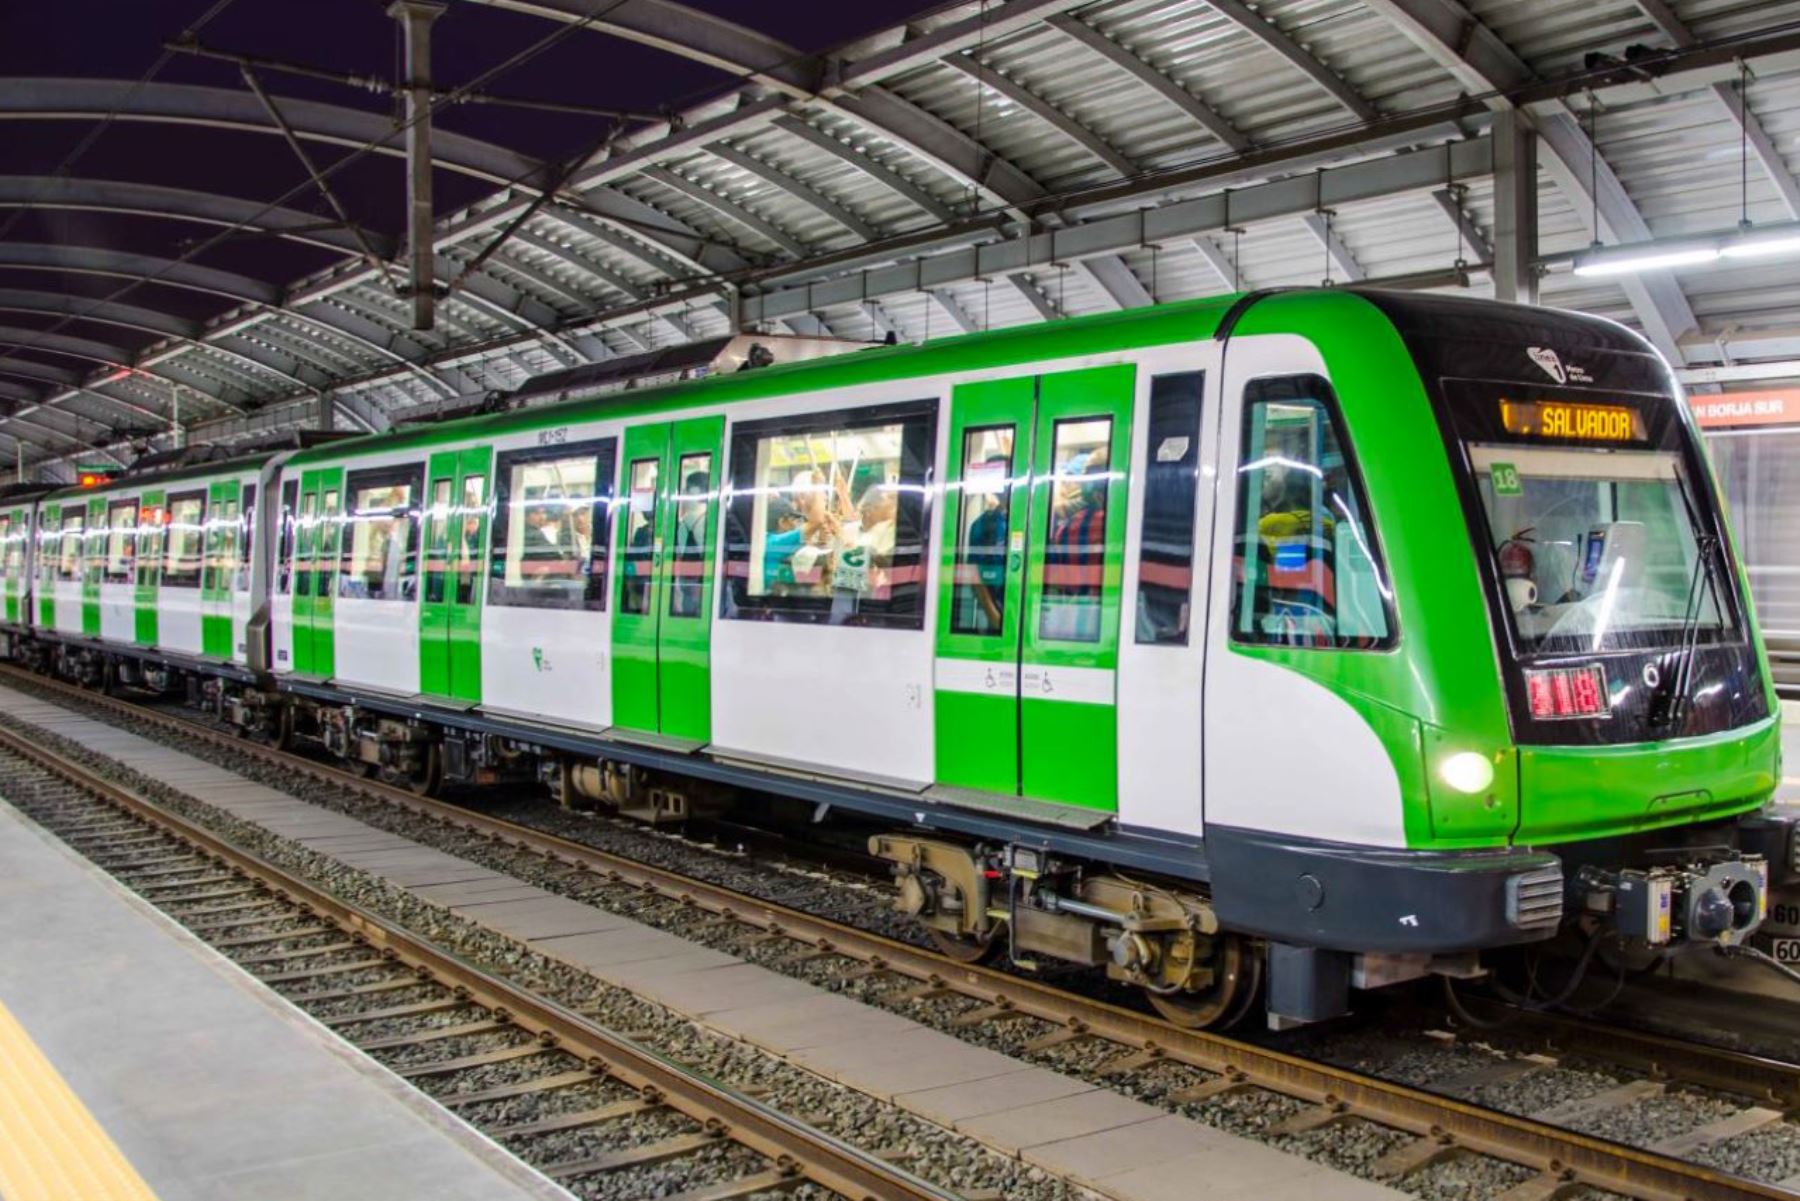 La capacidad de los trenes de la Línea 1 se reducirá de 1,200 a 200 pasajeros aproximadamente, con el objetivo de salvaguardar a los usuarios y cumplir con el distanciamiento social de un metro. Foto: ANDINA/Metro de Lima